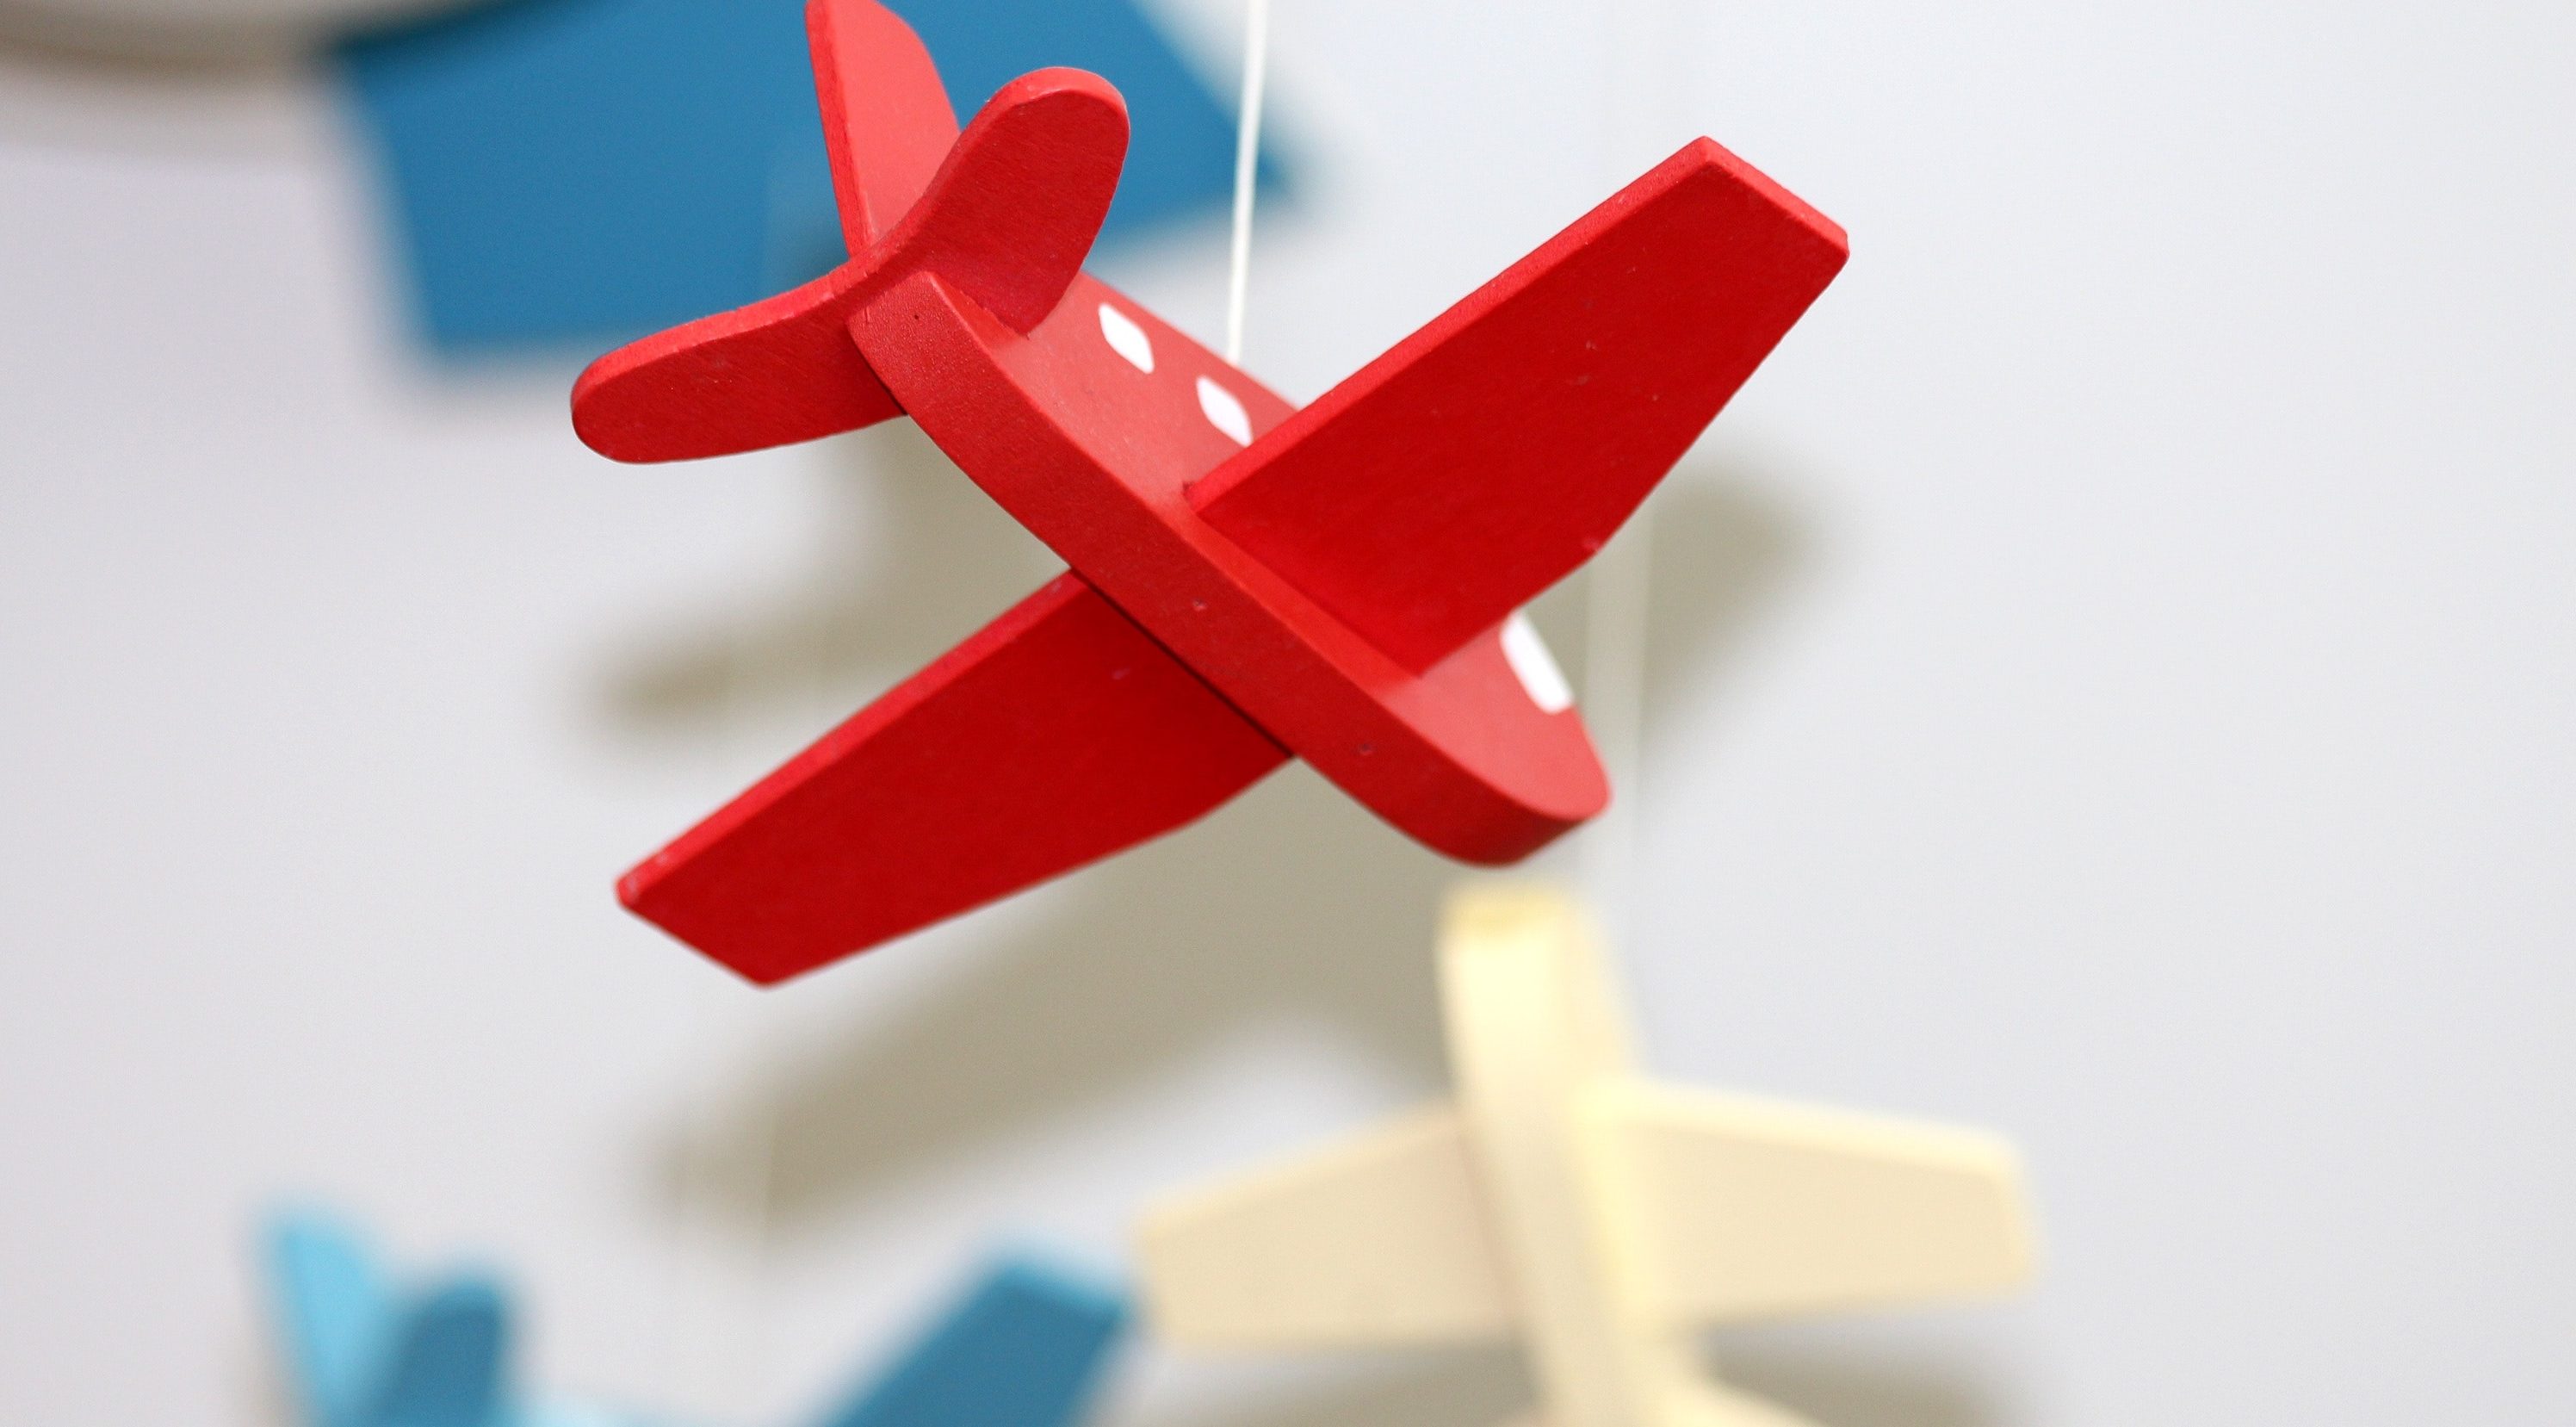 wooden zero waste toy airplane